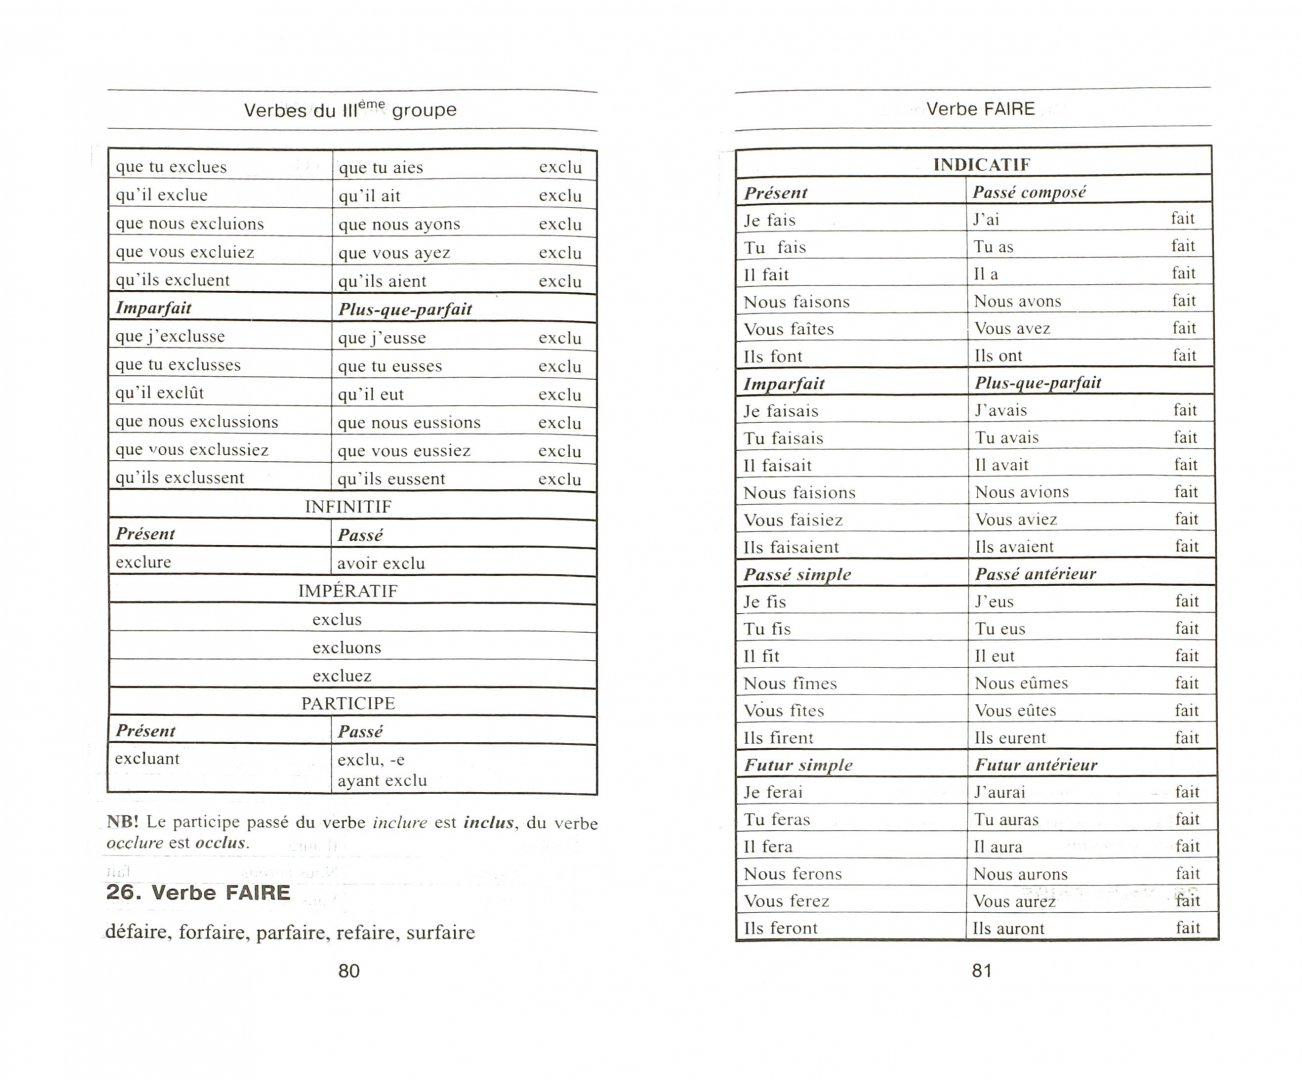 Иллюстрация 1 из 31 для Все неправильные французские глаголы. Формы спряжения, особенности употребления, исключения - Полина Козлова | Лабиринт - книги. Источник: Лабиринт